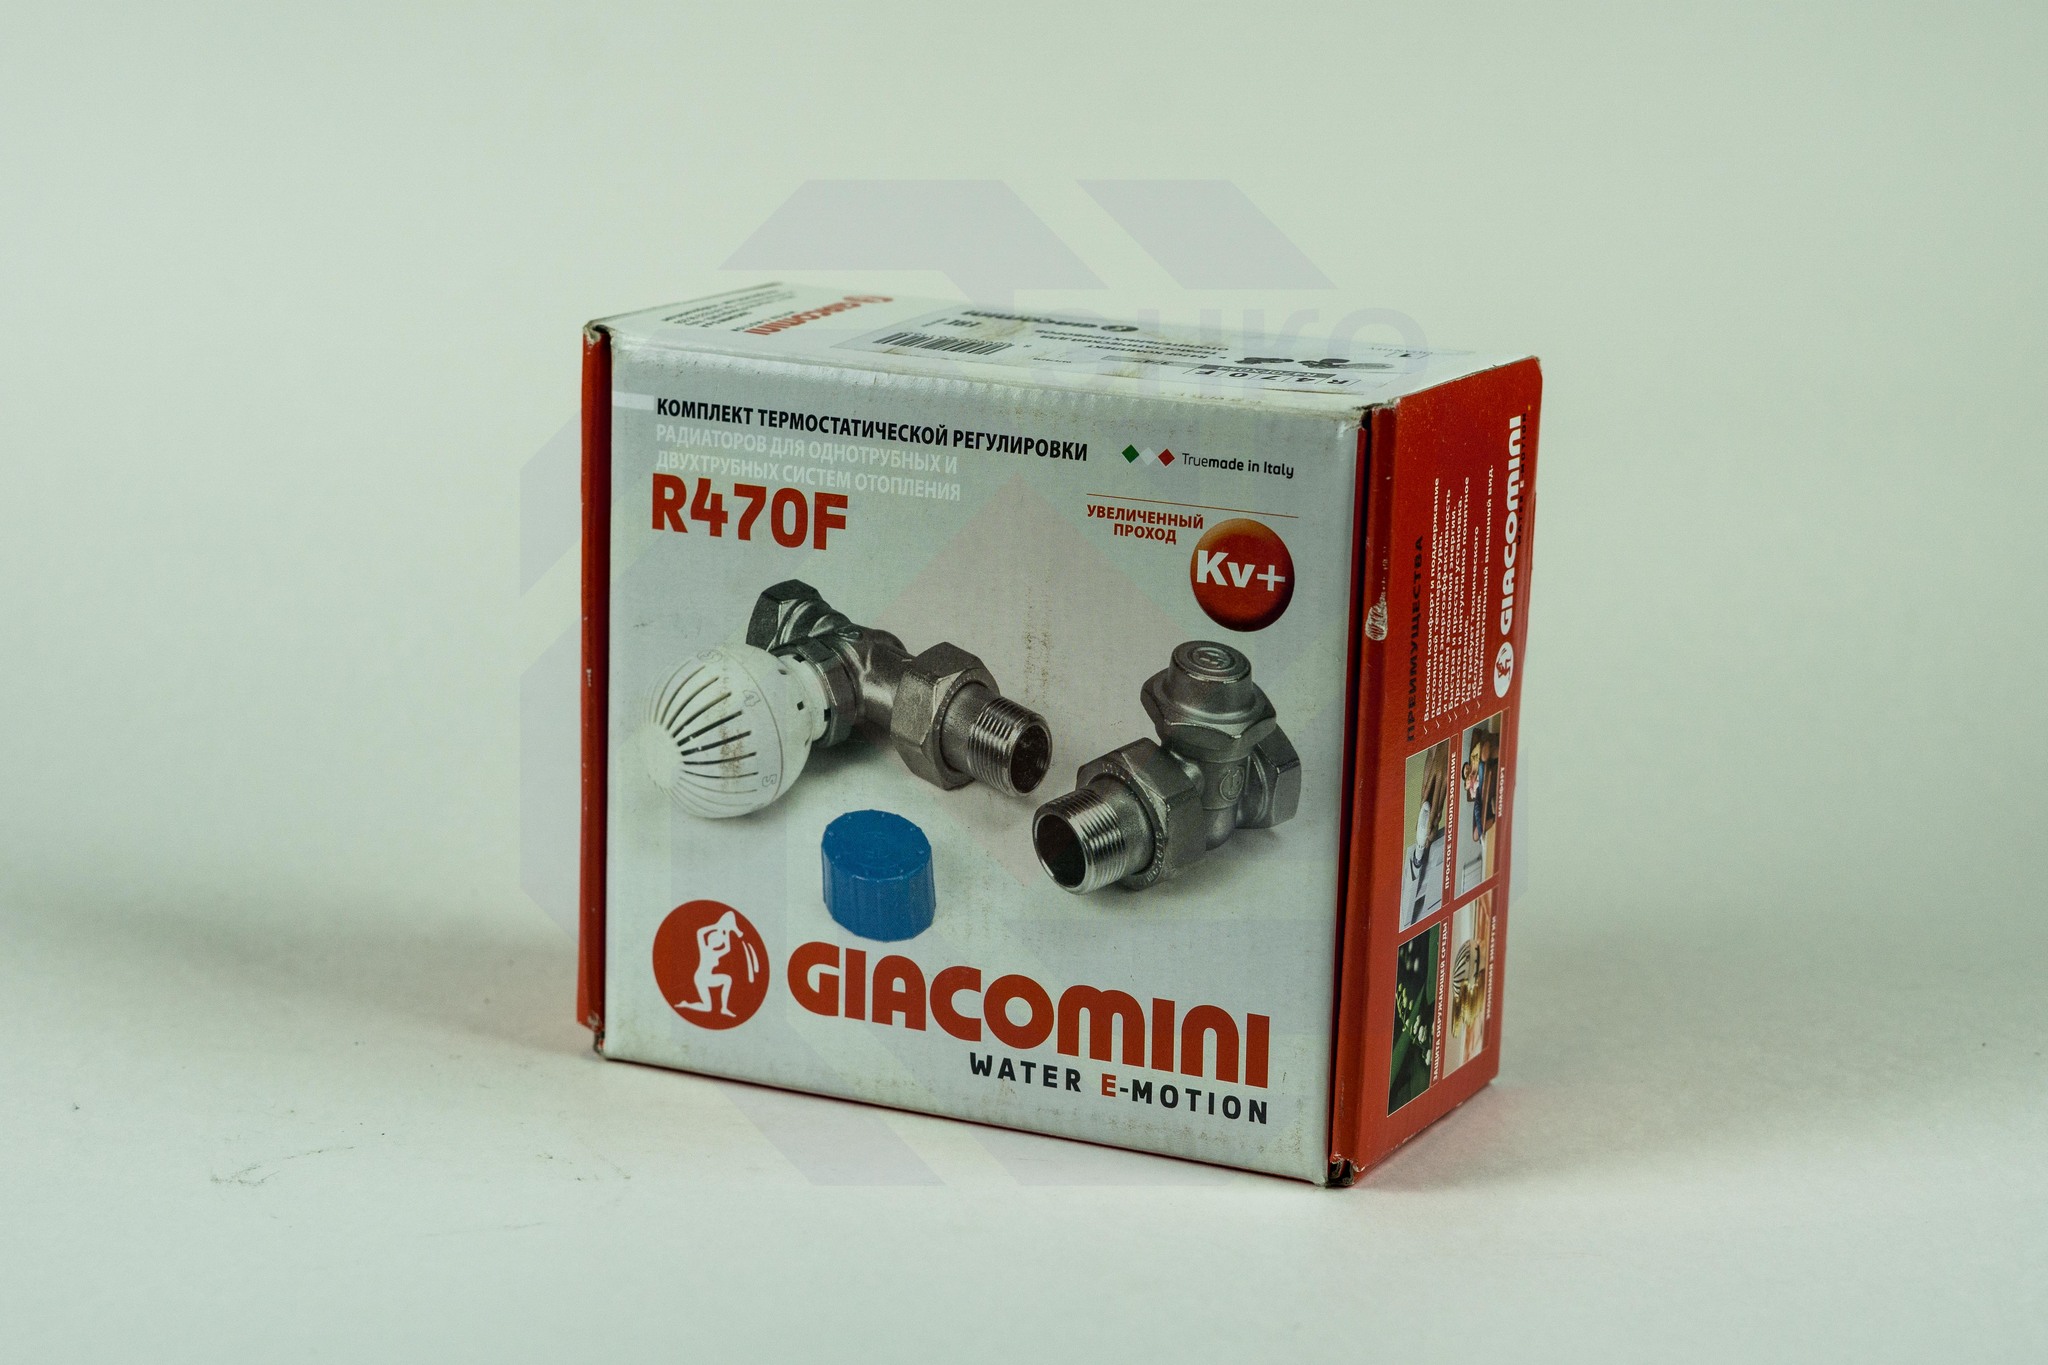 Комплект термостатической регулировки радиаторный GIACOMINI R470F-KV угловой ¾